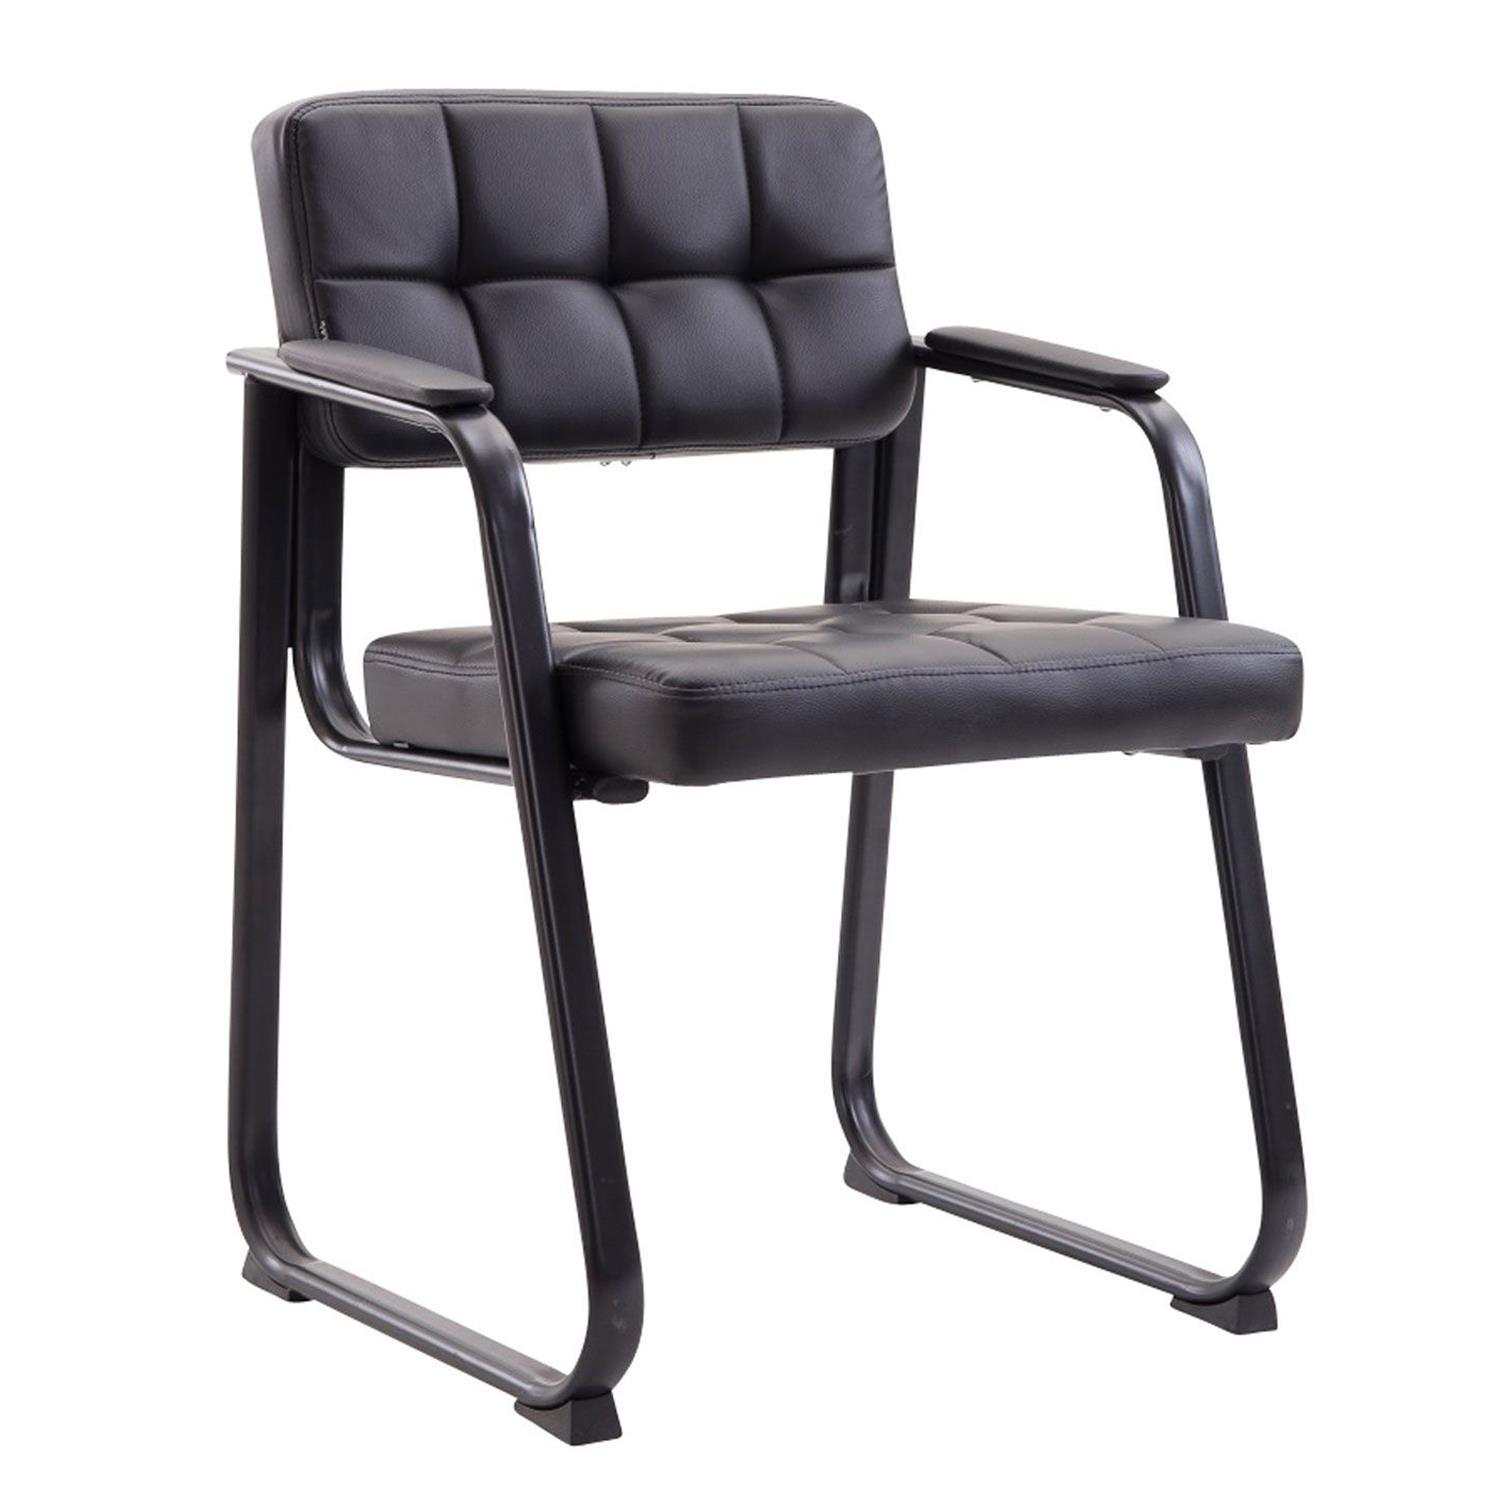 Cadeira de Visita CABANA, Design Moderno, Em Pele, Cor Preto